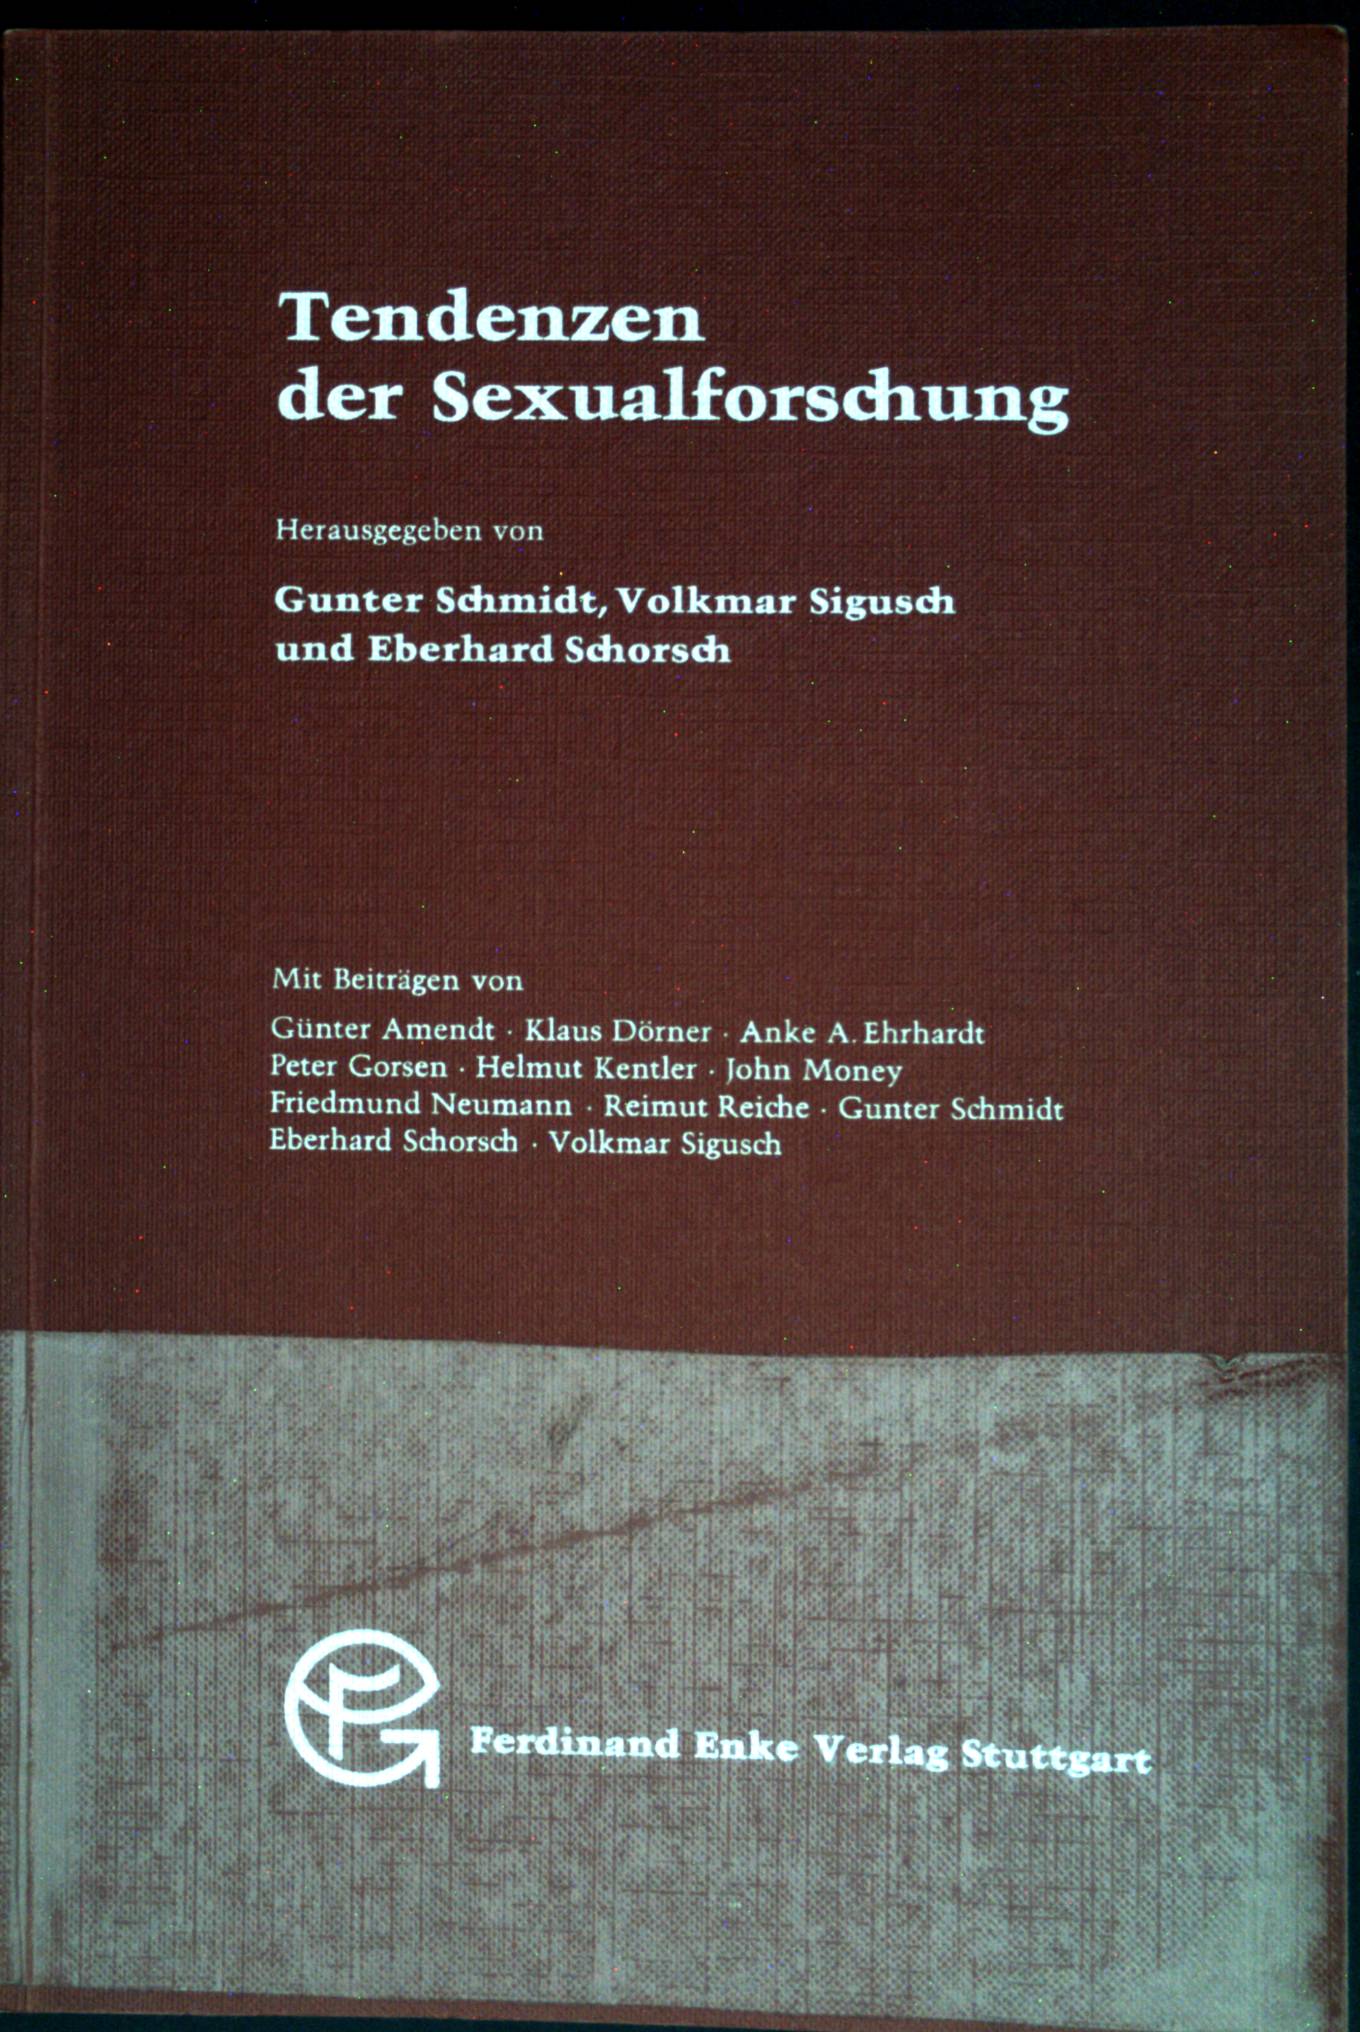 Tendenzen der Sexualforschung. Beiträge zur Sexualforschung ; Bd. 49 - Schmidt, Gunter, Volkmar Sigusch und Eberhard Schorsch